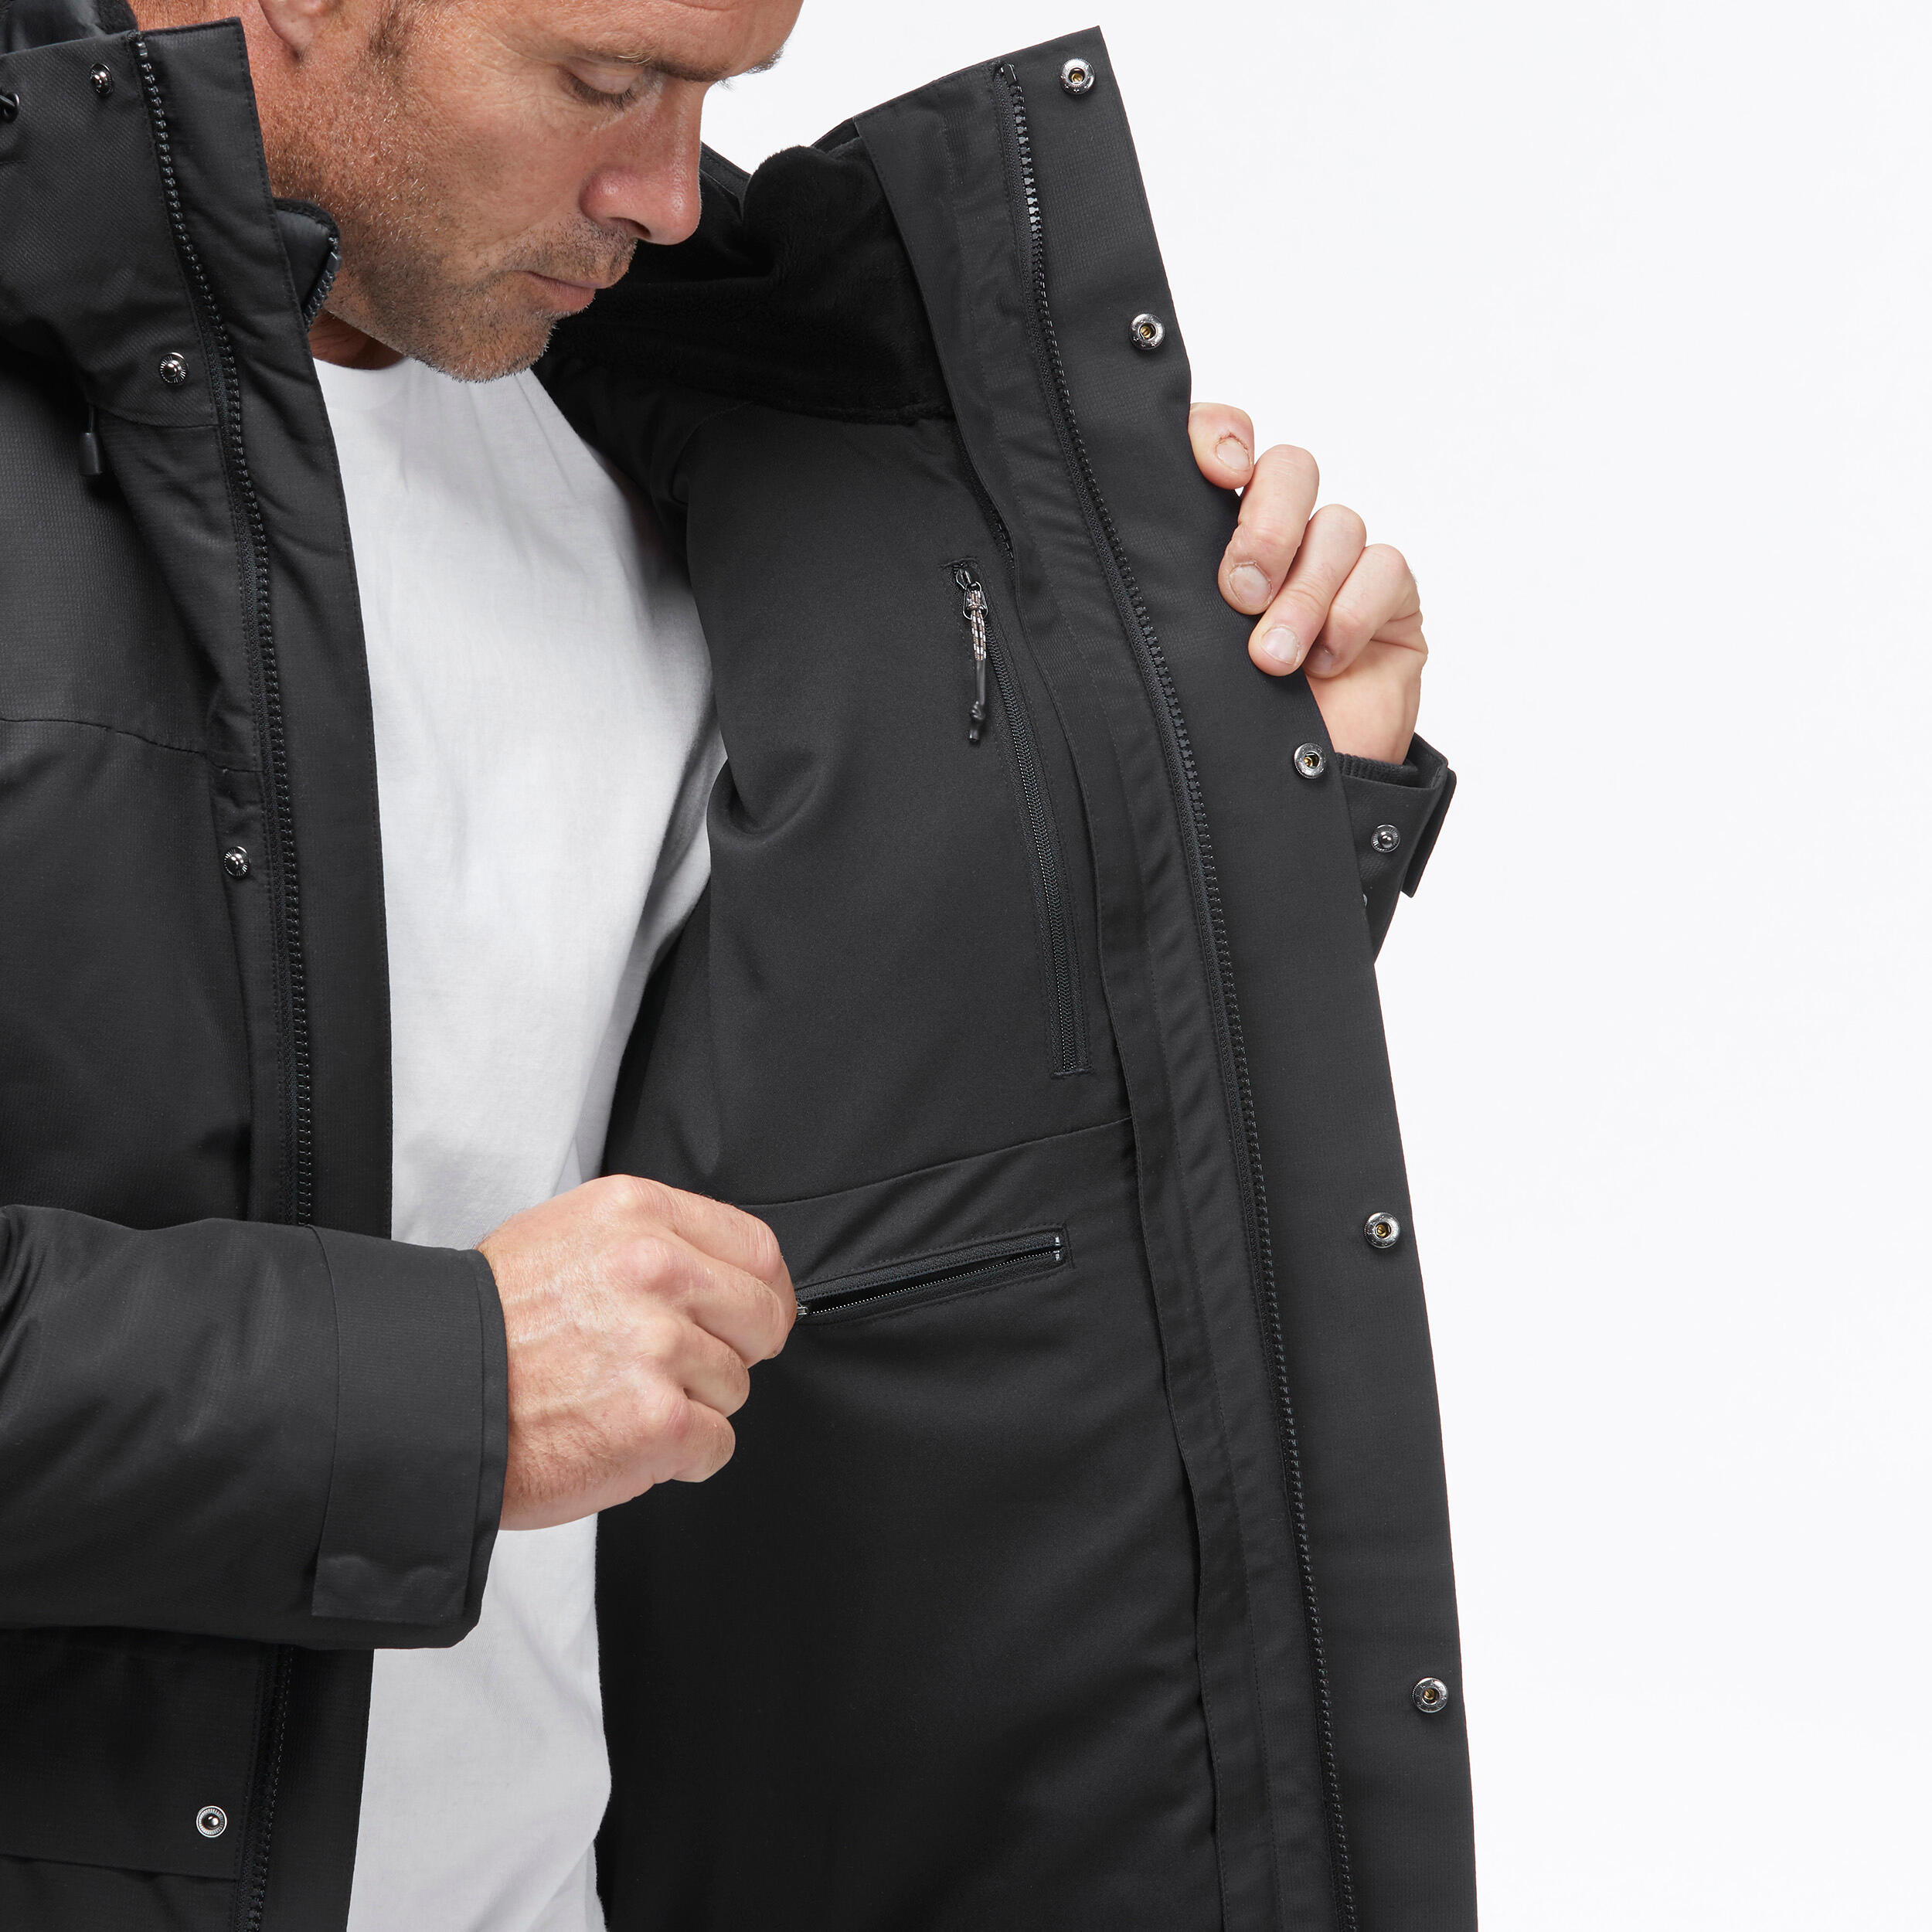 Men's 3-in-1 Waterproof Travel Trekking Jacket Travel 900 Warm -15°C - black  12/20